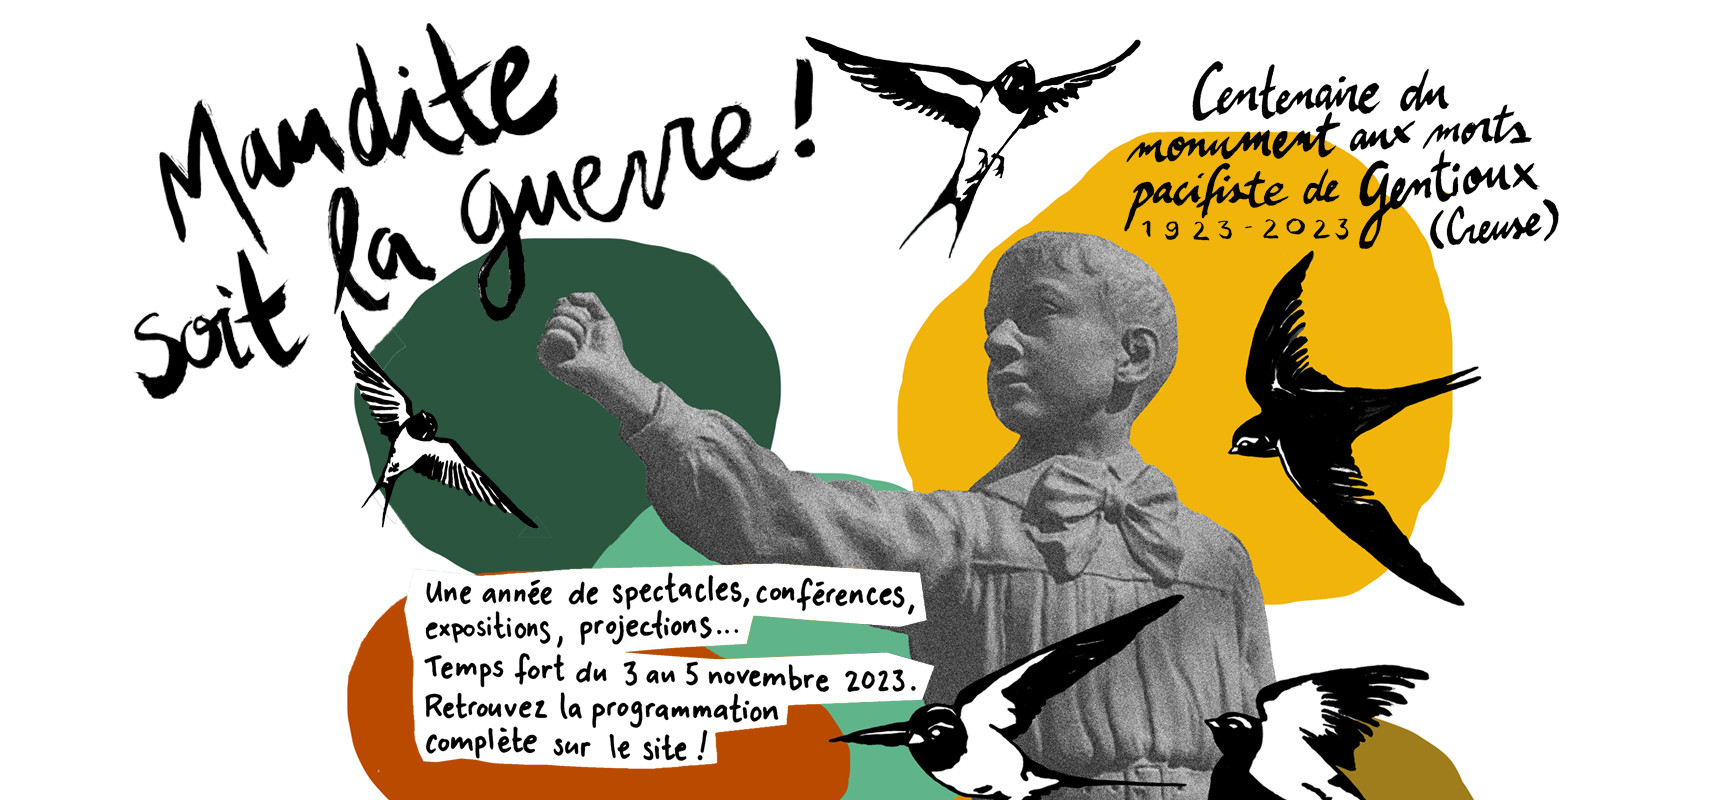 Programme du 5 au 11 novembre – Centenaire du monument aux morts pacifiste de Gentioux 1923 – 2023 – Maudite soit la guerre !